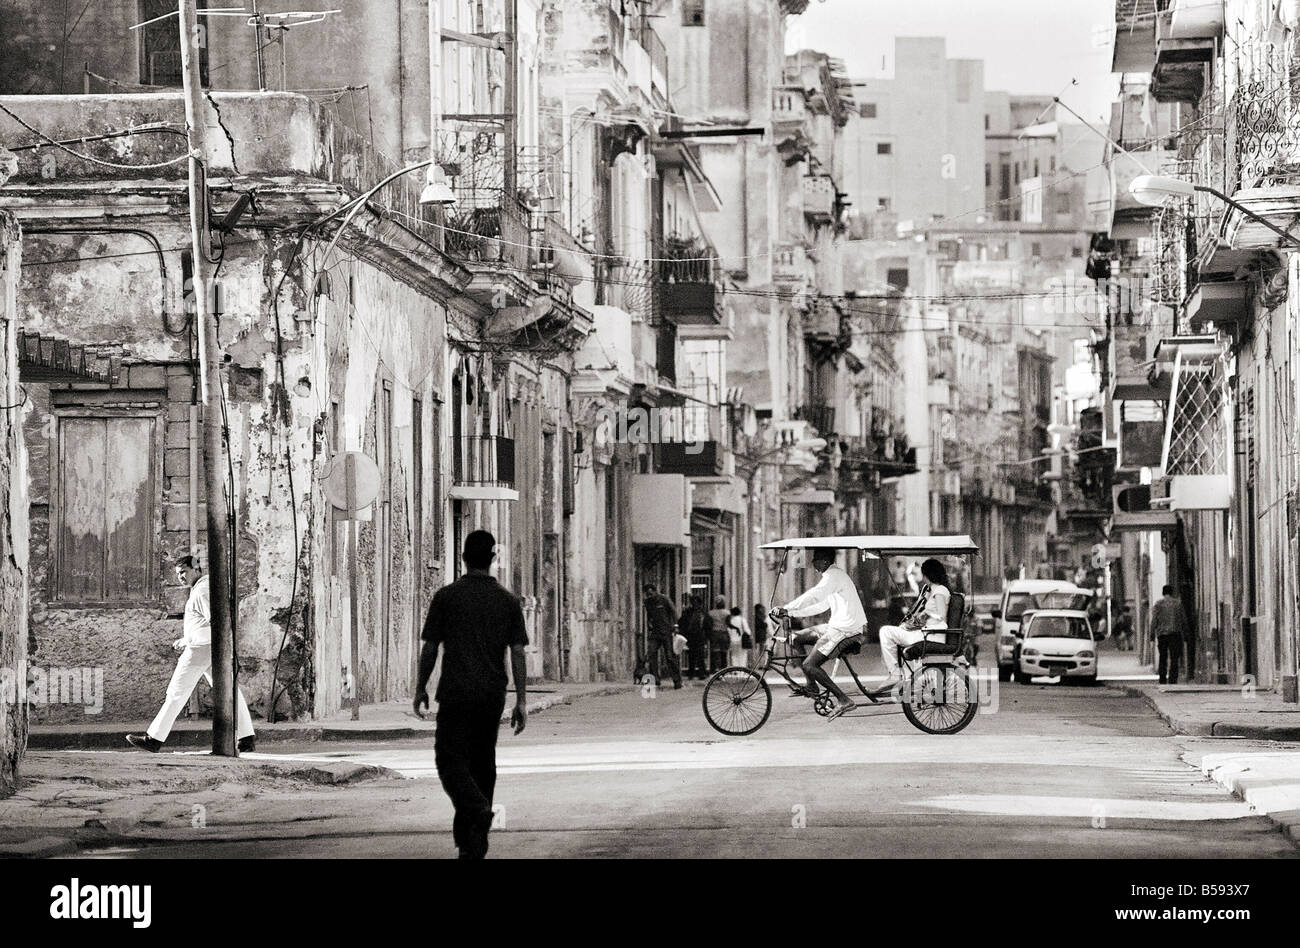 Imagen tomada con una Holga 120 películas de formato medio Cámara juguete de vista a lo largo de la transitada calle de La Habana, Cuba, Las Antillas Centroamérica Foto de stock